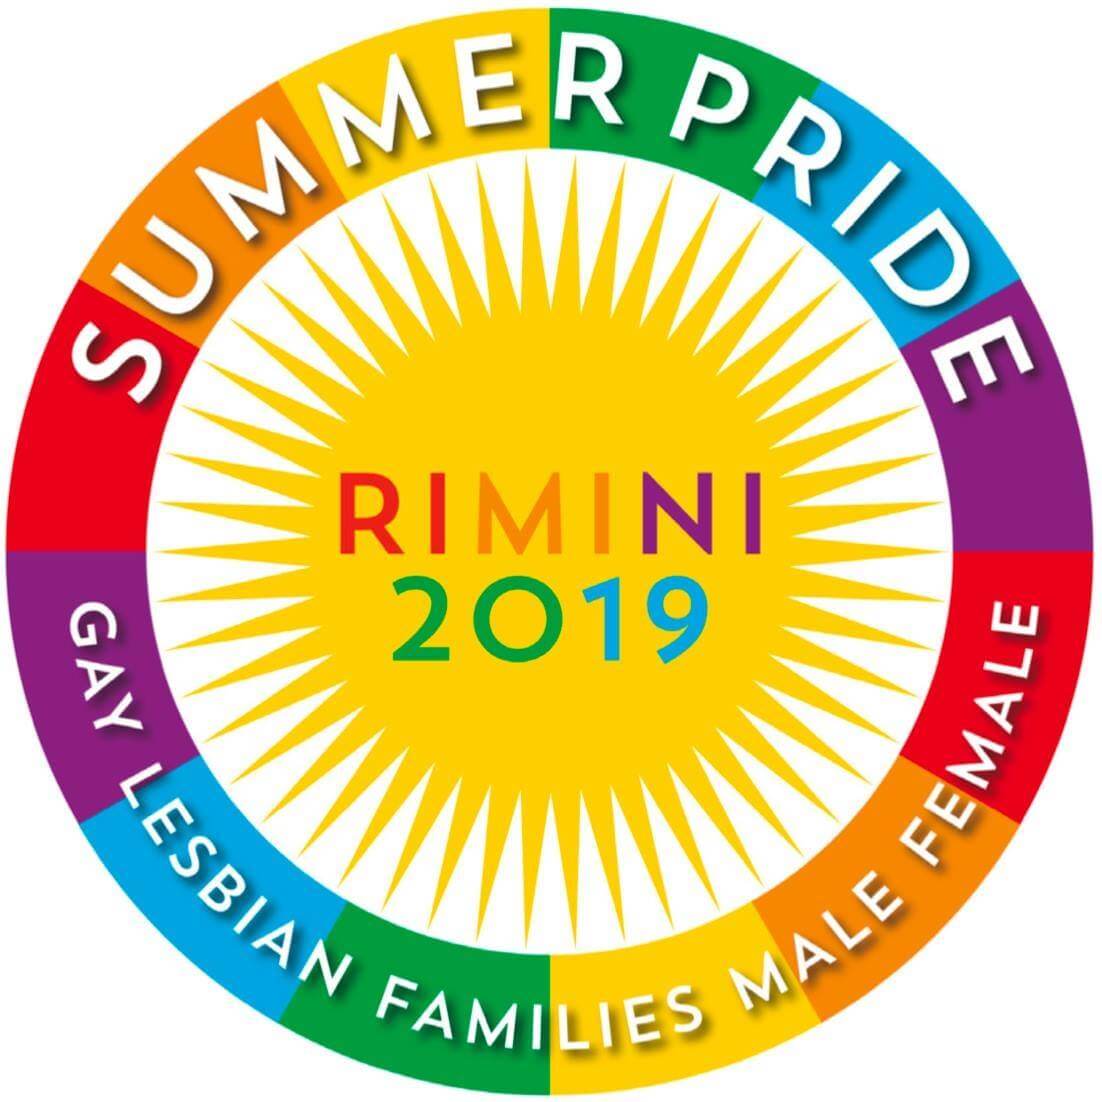 Onda Pride, è il giorno di Rimini, Reggio Calabria e Campobasso - 64218419 2443915165881732 3262009845787656192 o - Gay.it